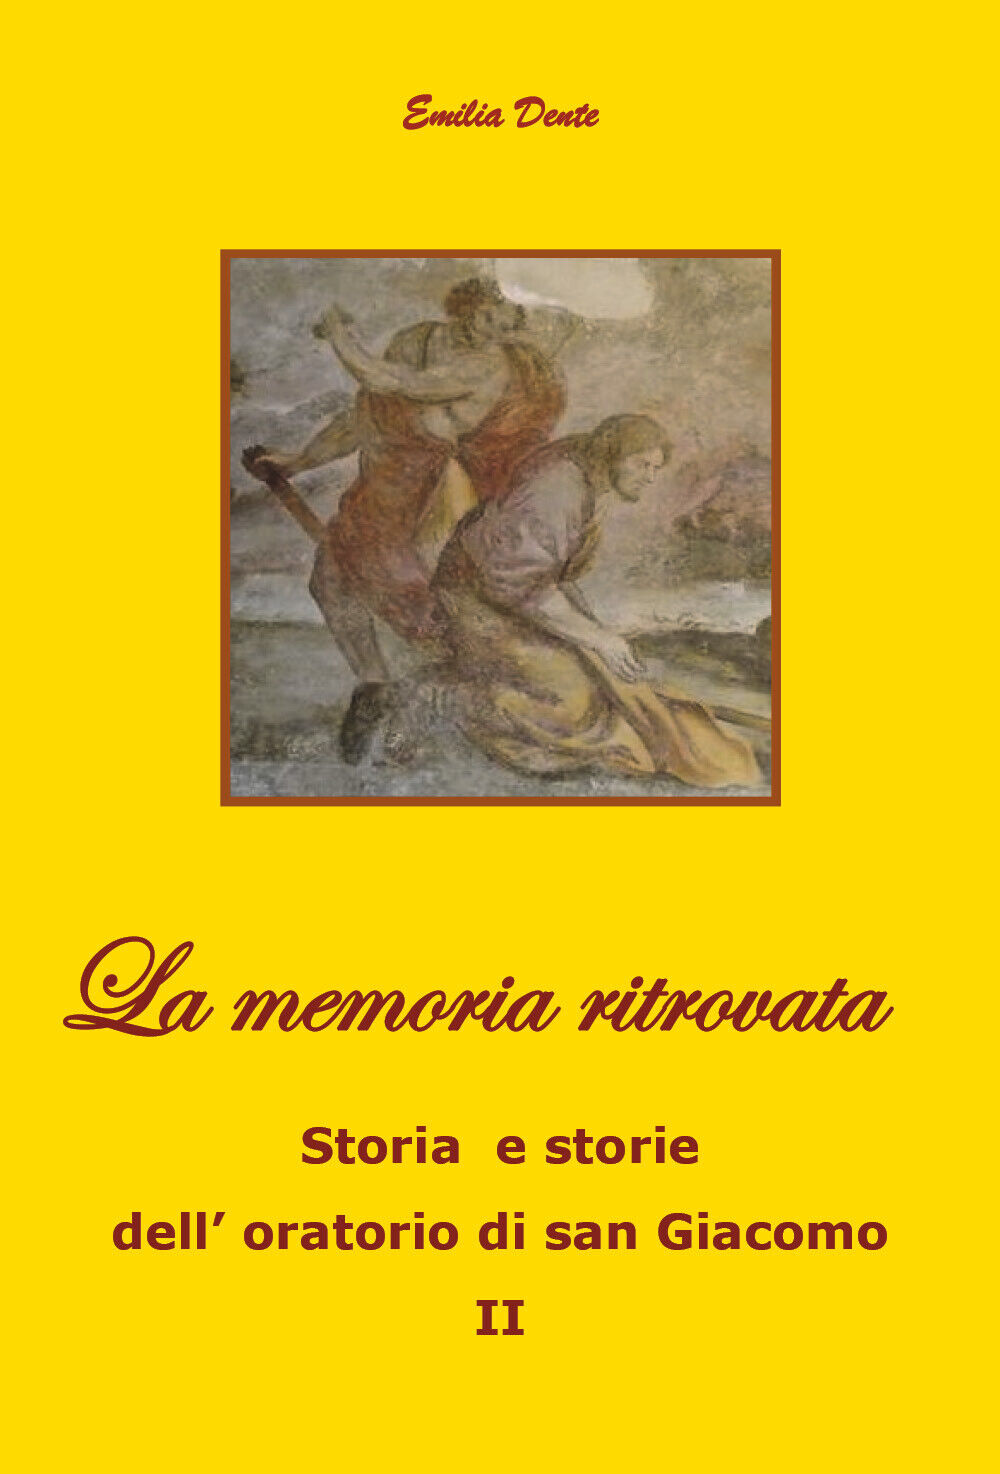 La memoria ritrovata Storia e storie delL'oratorio di san Giacomo II, 2019 libro usato